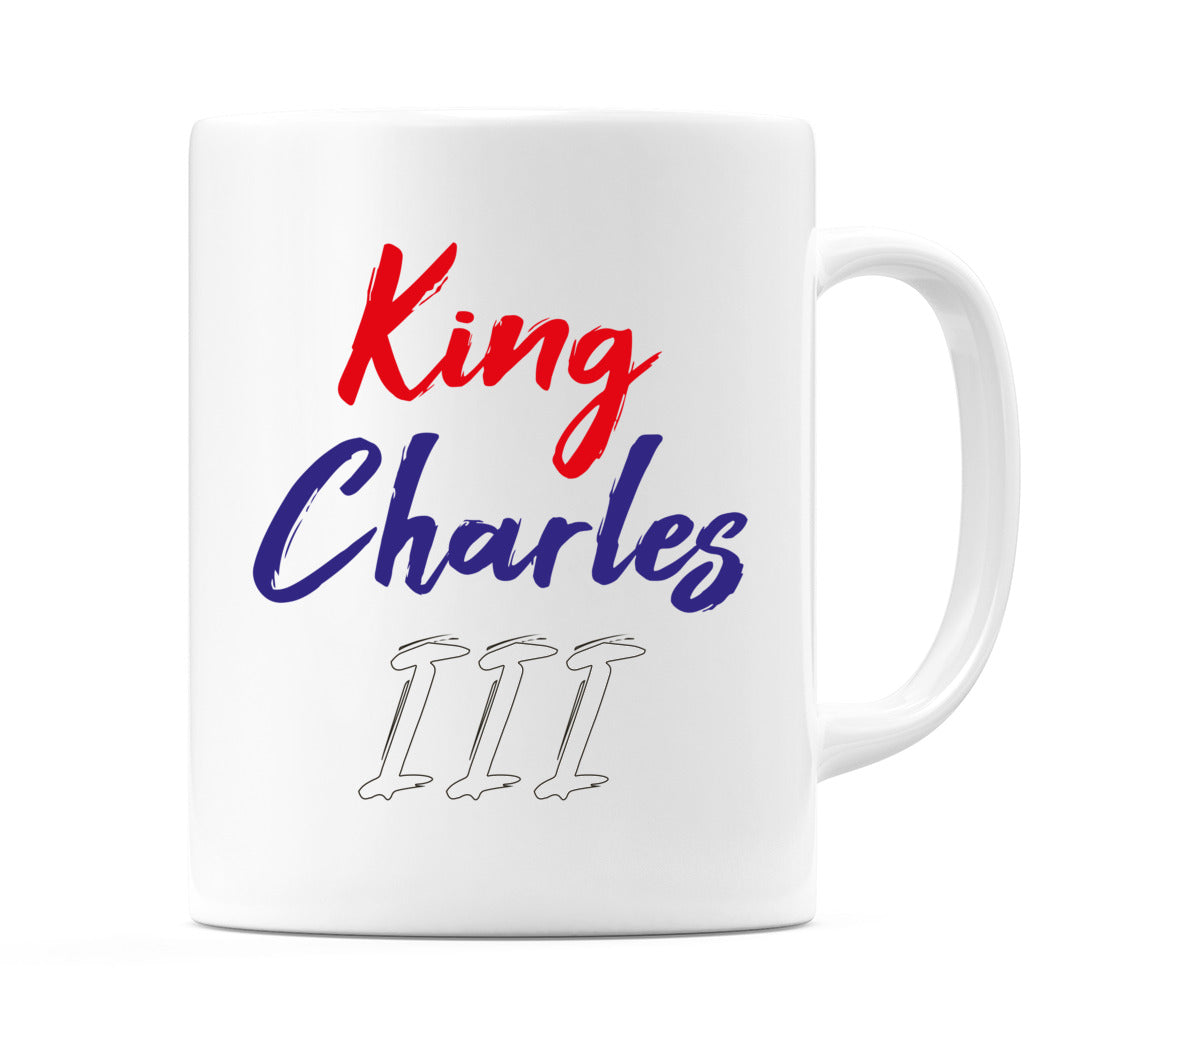 King Charles III in Red, Blue & White Mug